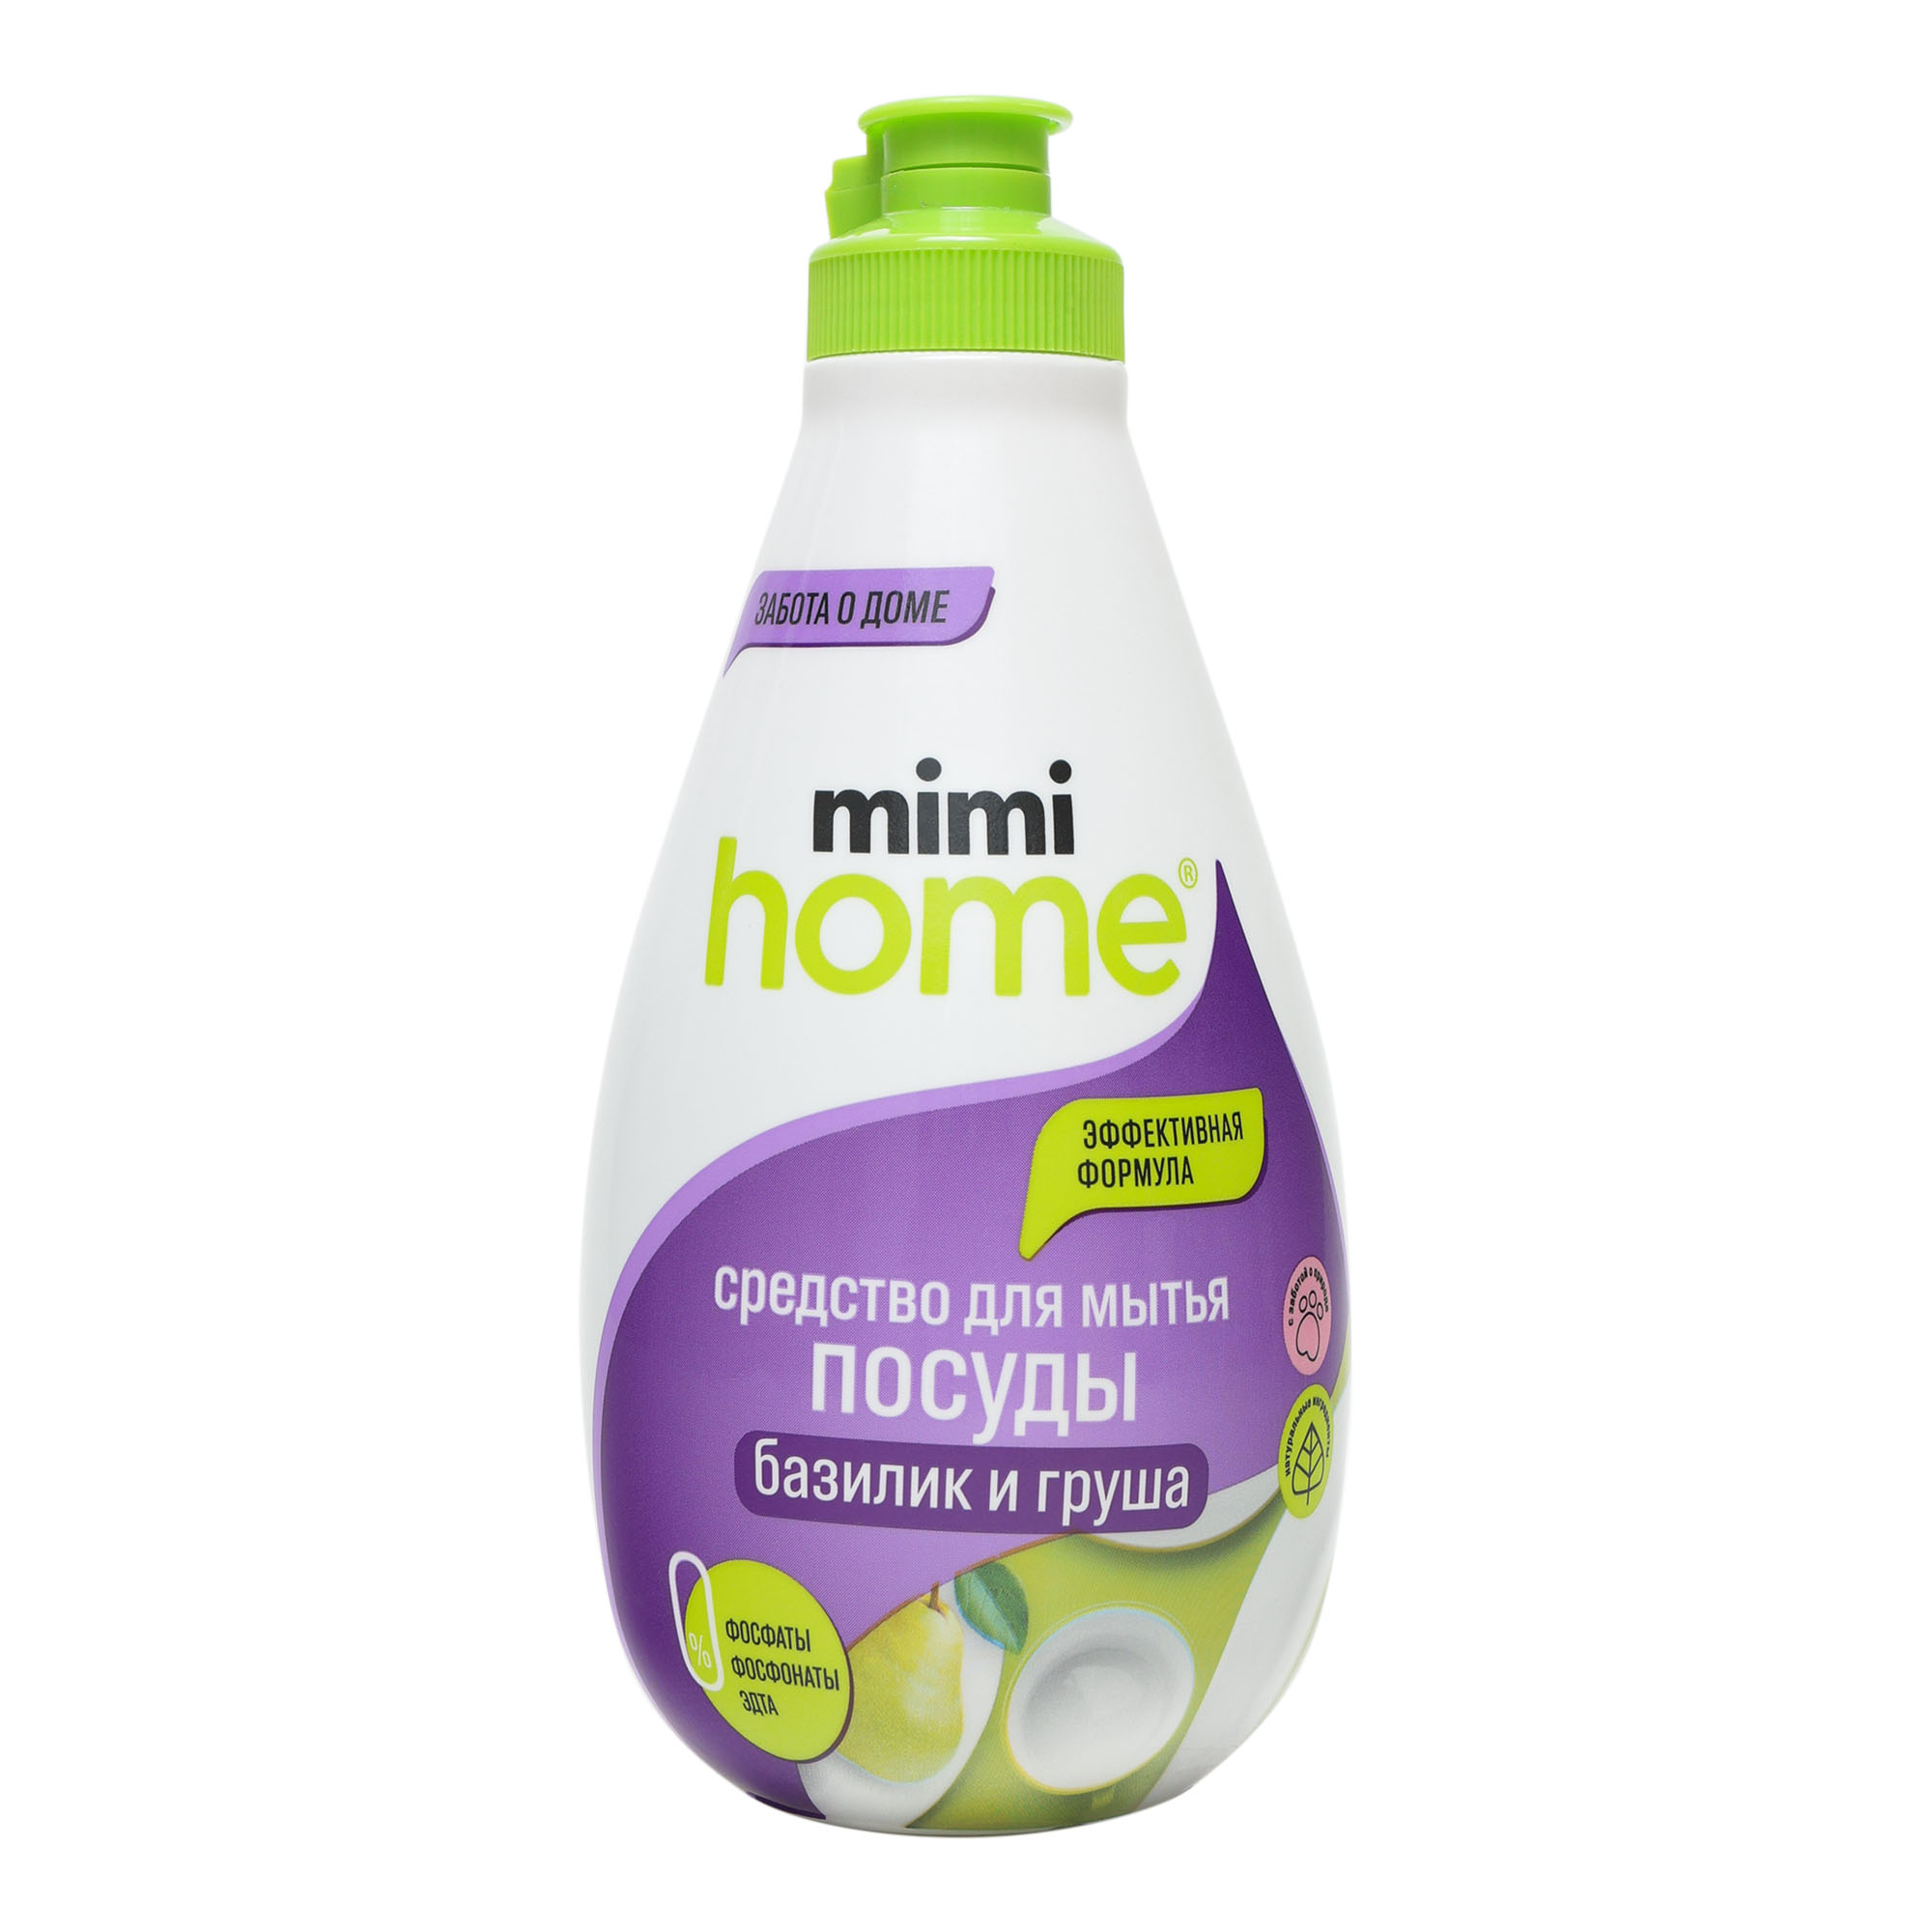 Средство для мытья посуды Mimi Home Базилик и груша 370 мл моющее средство для мрамора и натурального камня hg